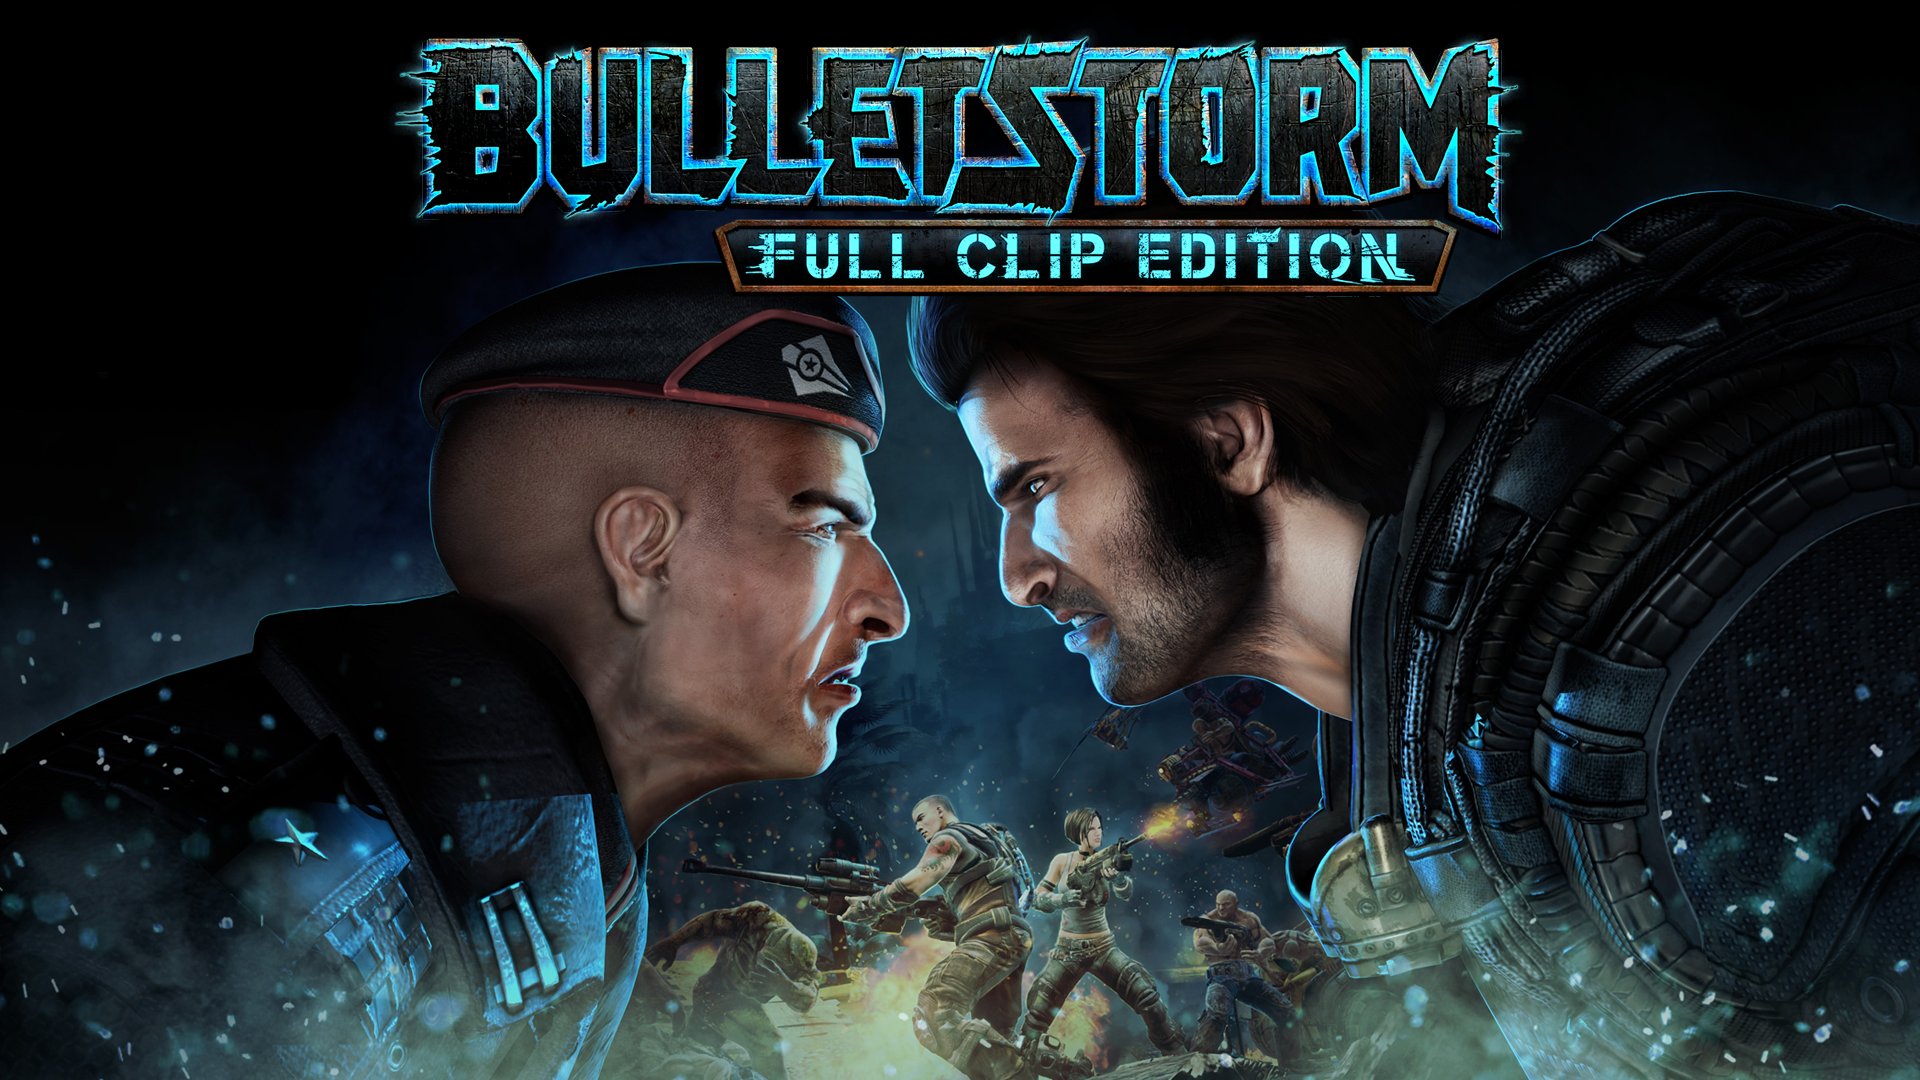 Ya a la venta Bulletstorm Full Clip Edition en formato físico para PS4, Xbox One y PC